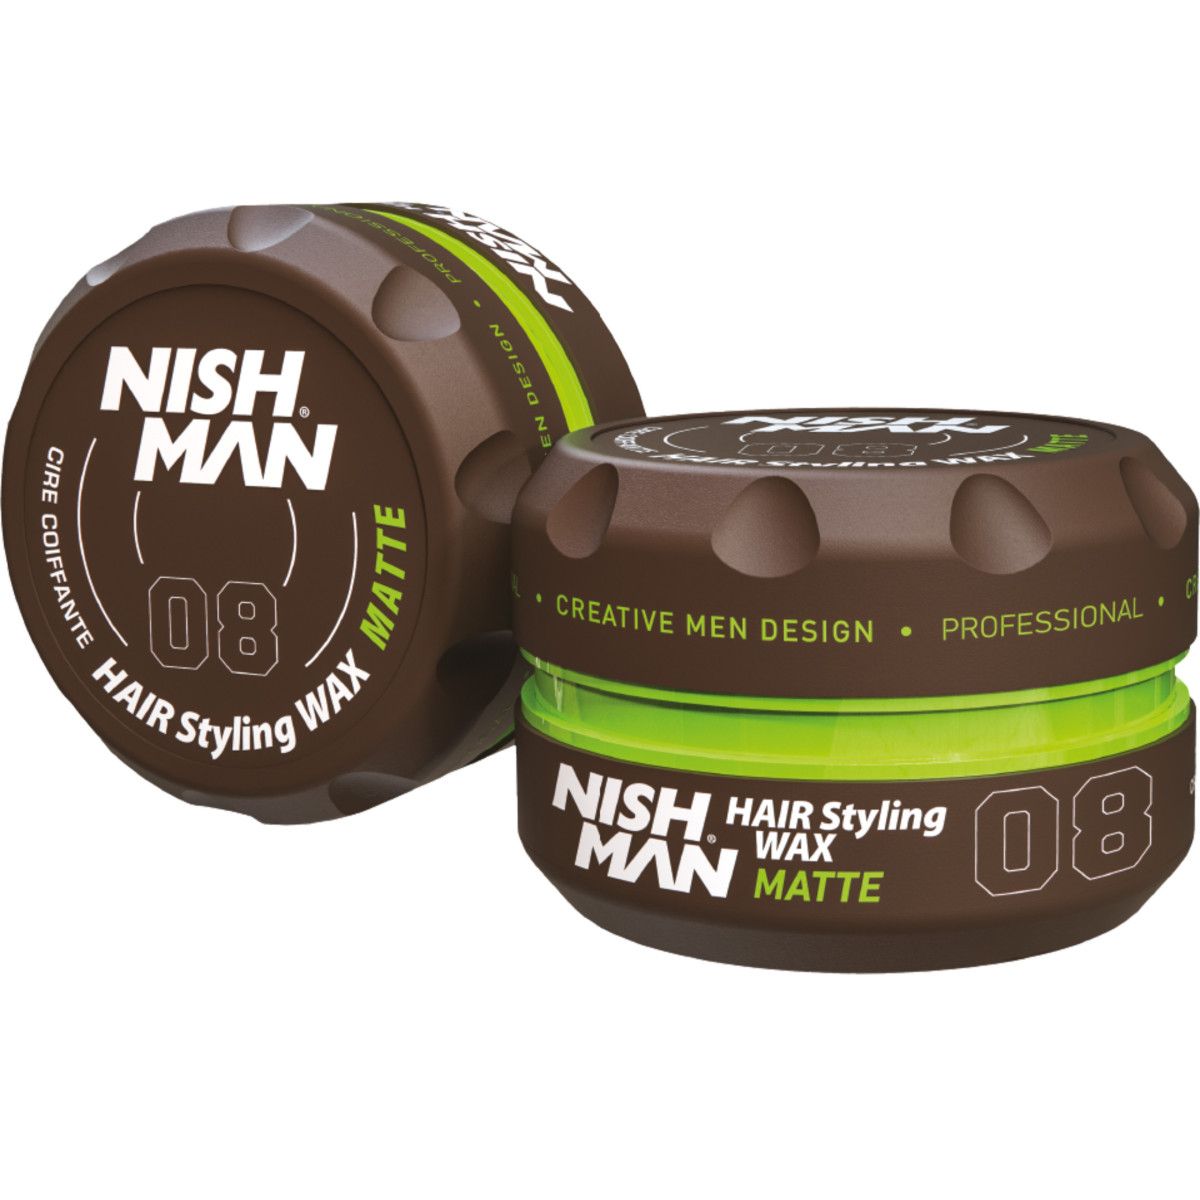 Nishman 08 Hair Styling Wax Matte - pomada matująca do stylizacji włosów, 150ml